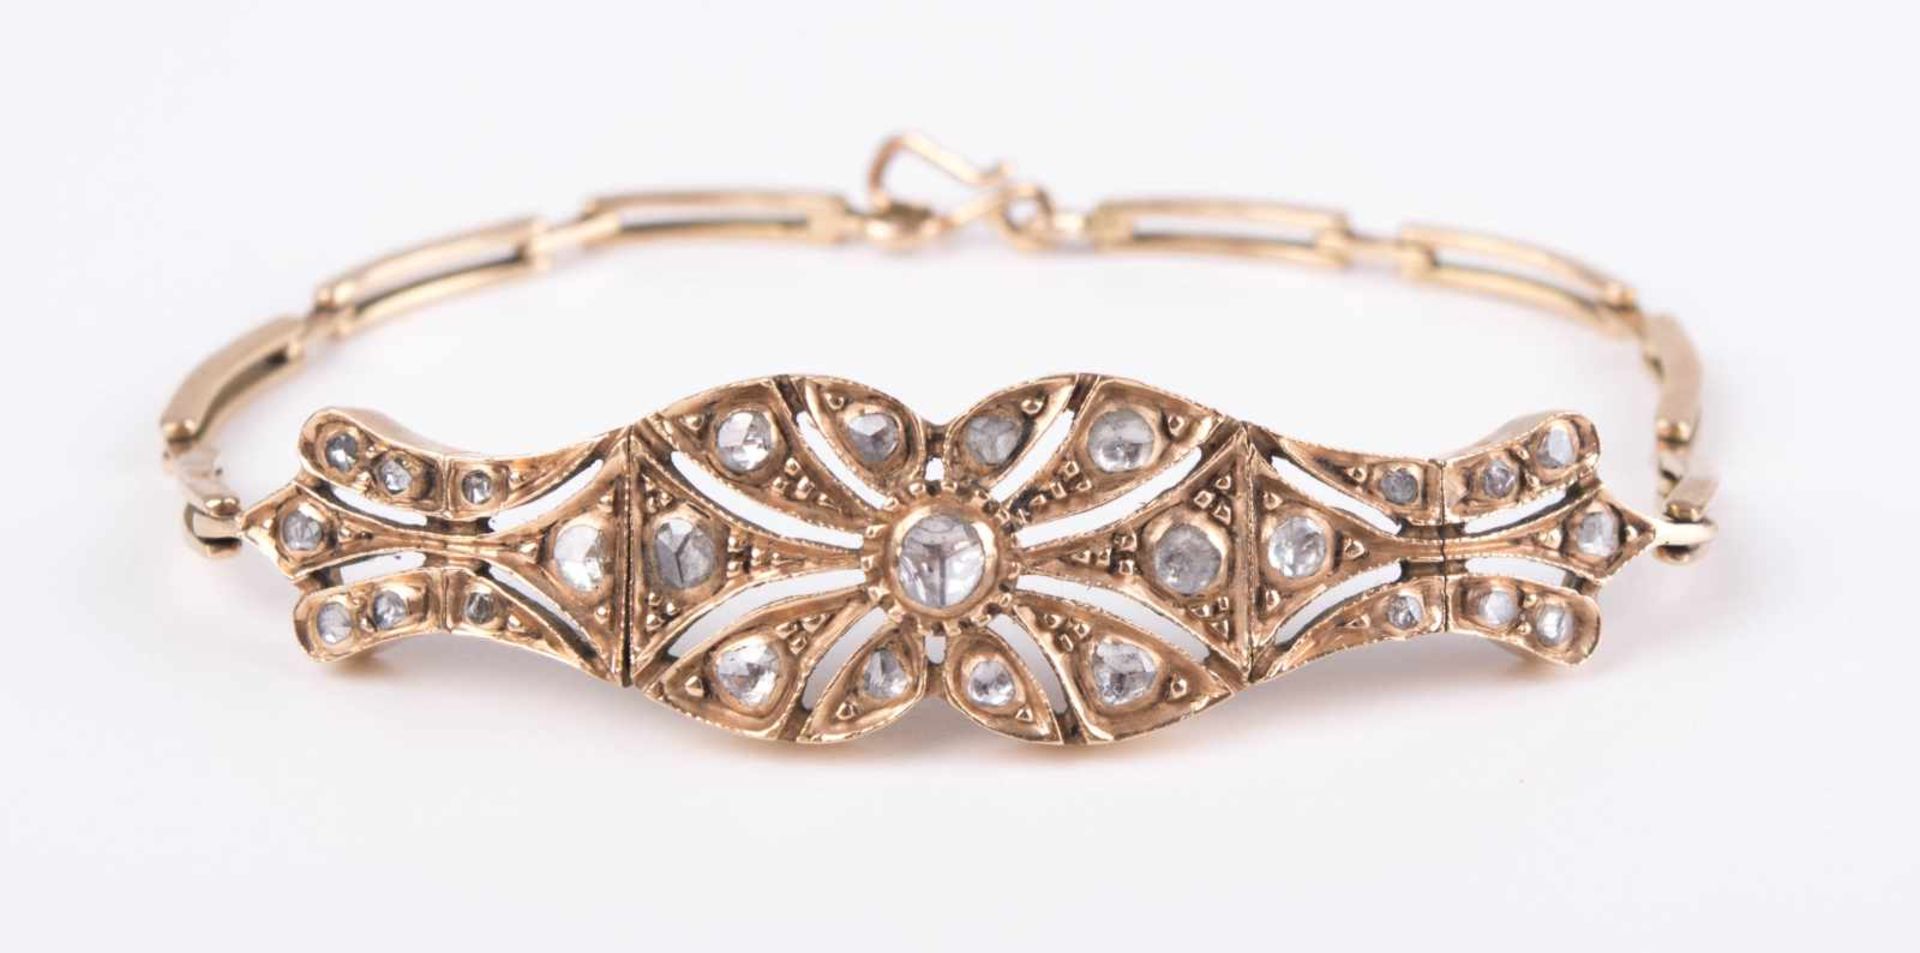 Diamantarmband Türkei um 1900 / diamond bracelet, Turkey about 1900 GG 585/000 geprüft, besetzt - Bild 2 aus 8